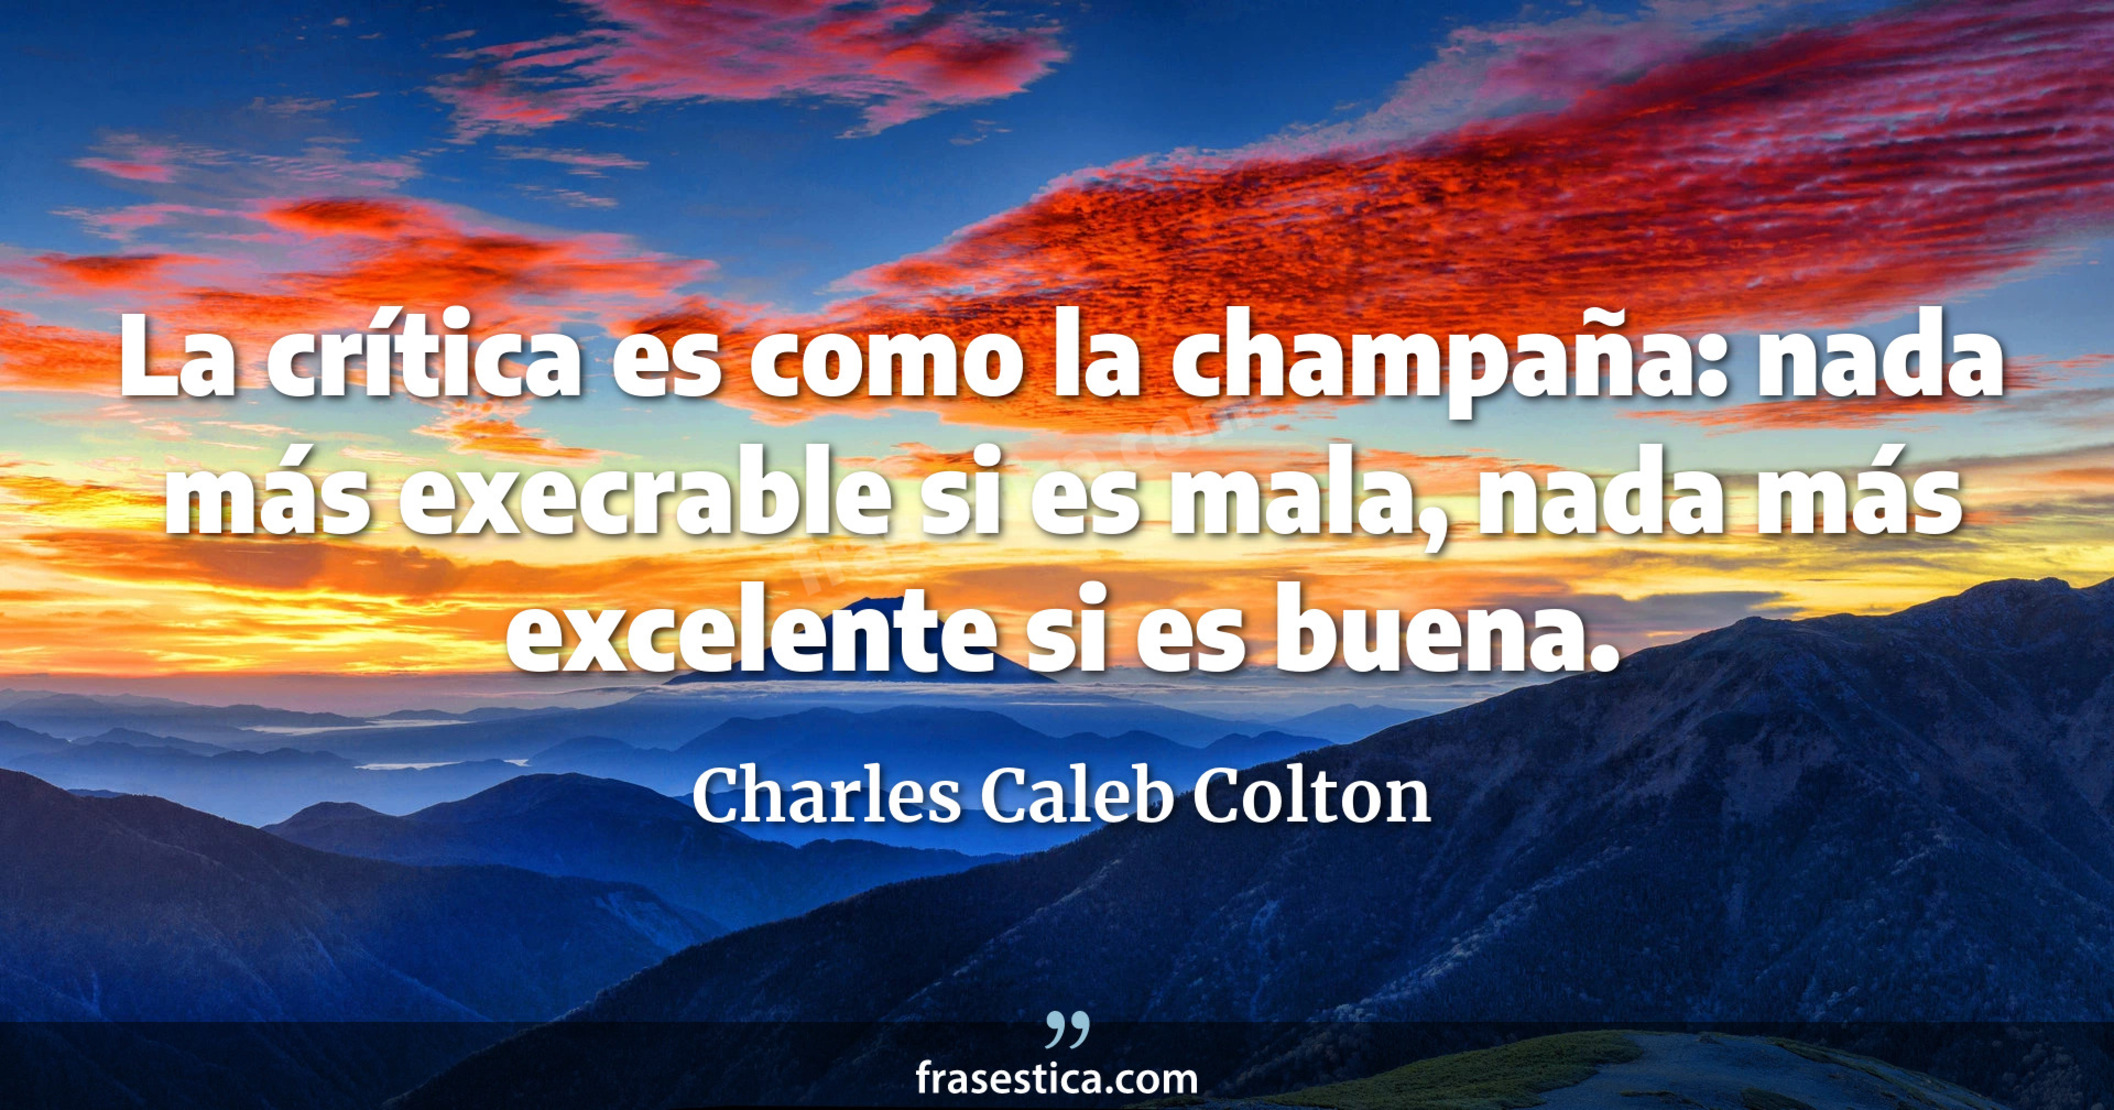 La crítica es como la champaña: nada más execrable si es mala, nada más excelente si es buena. - Charles Caleb Colton